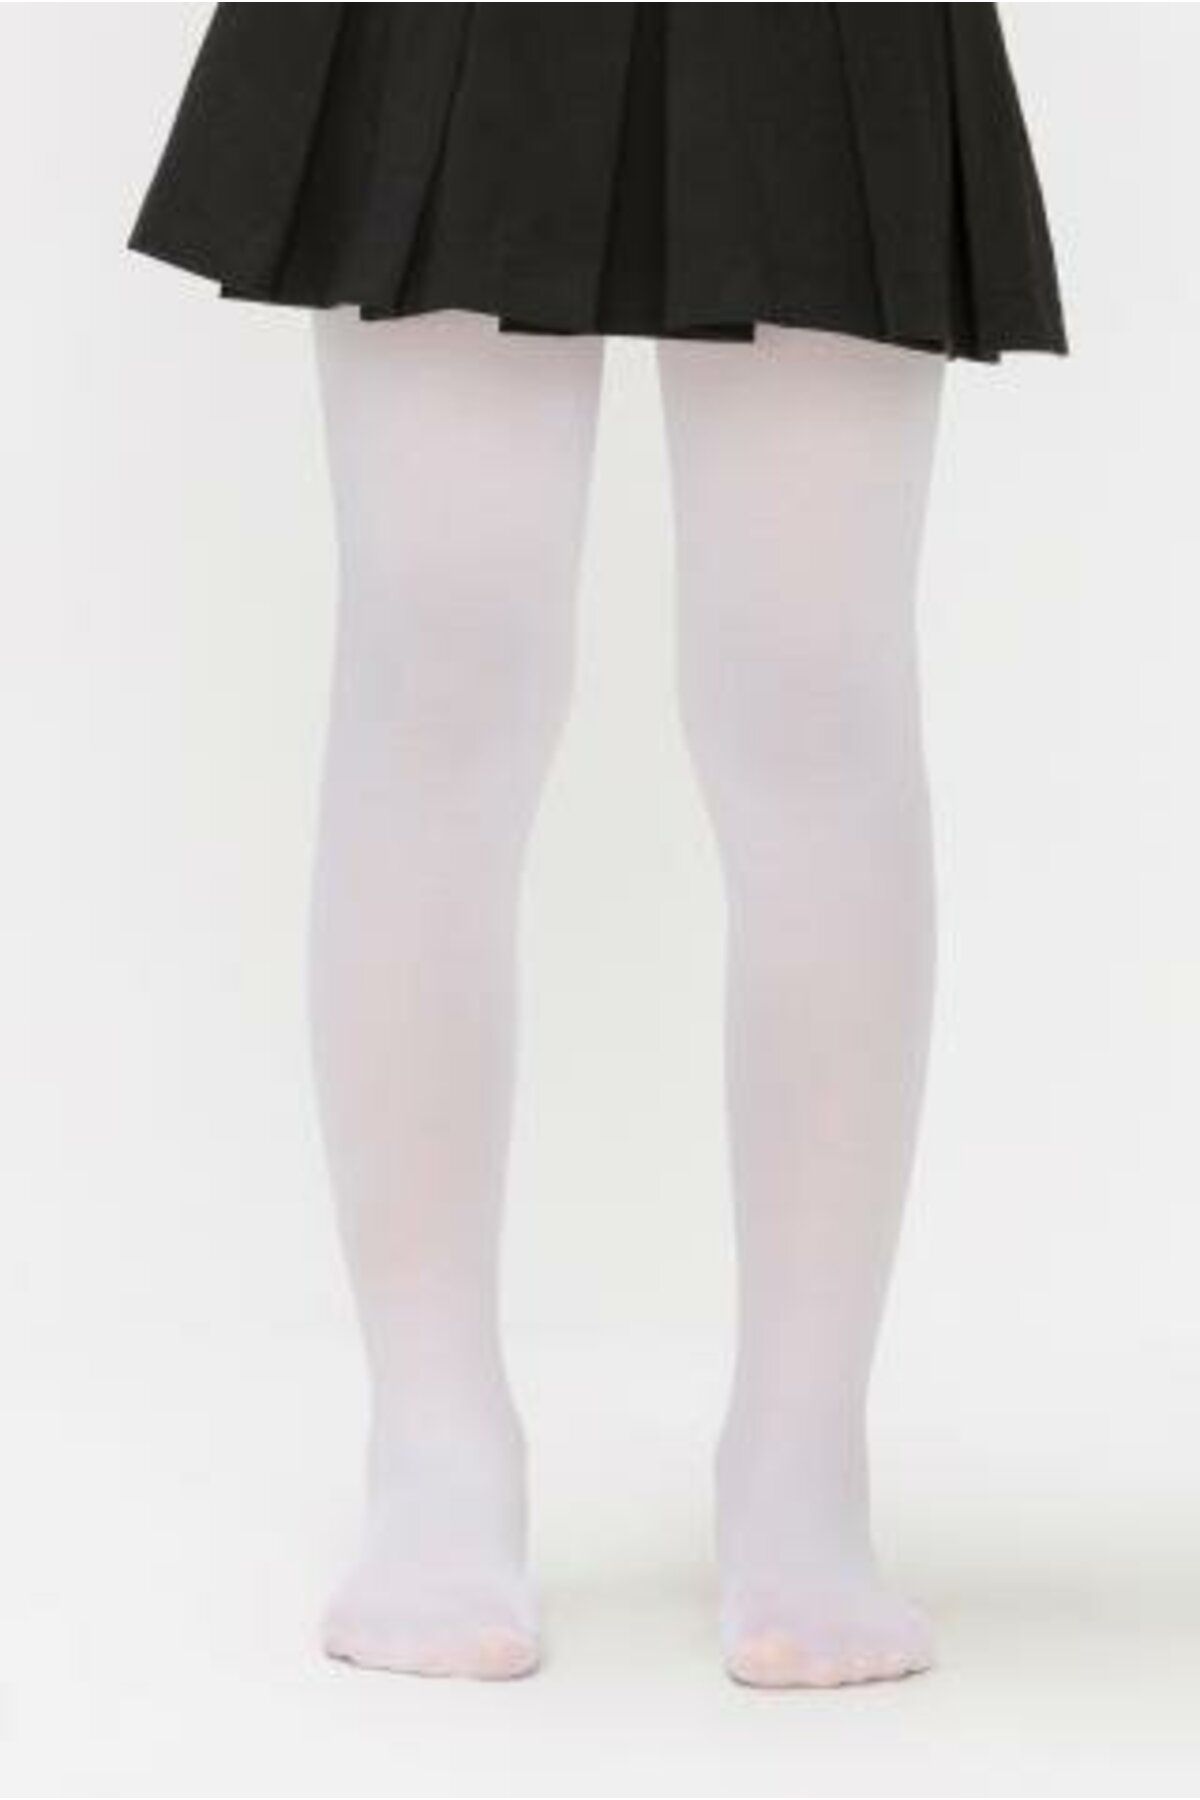 Penti Beyaz Kız Çocuk Mikro 40 Külotlu Çorap